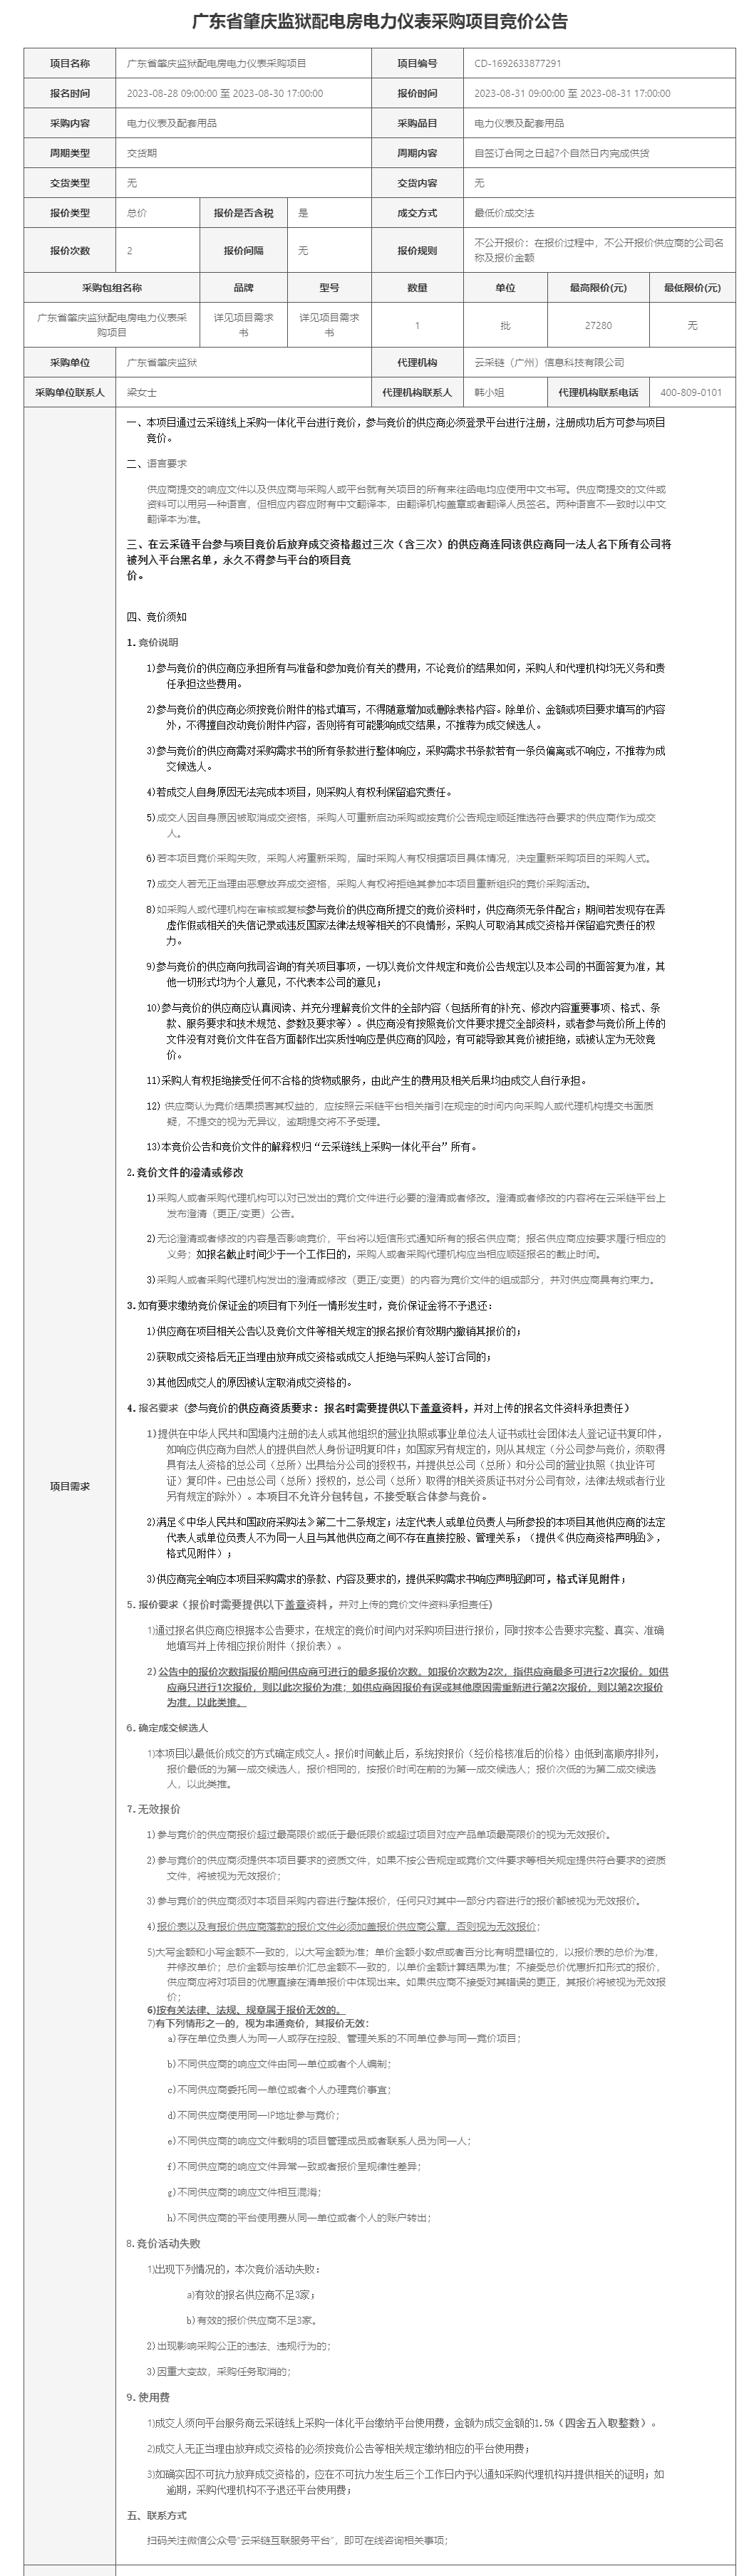 广东省肇庆监狱配电房电力仪表采购项目公告.png